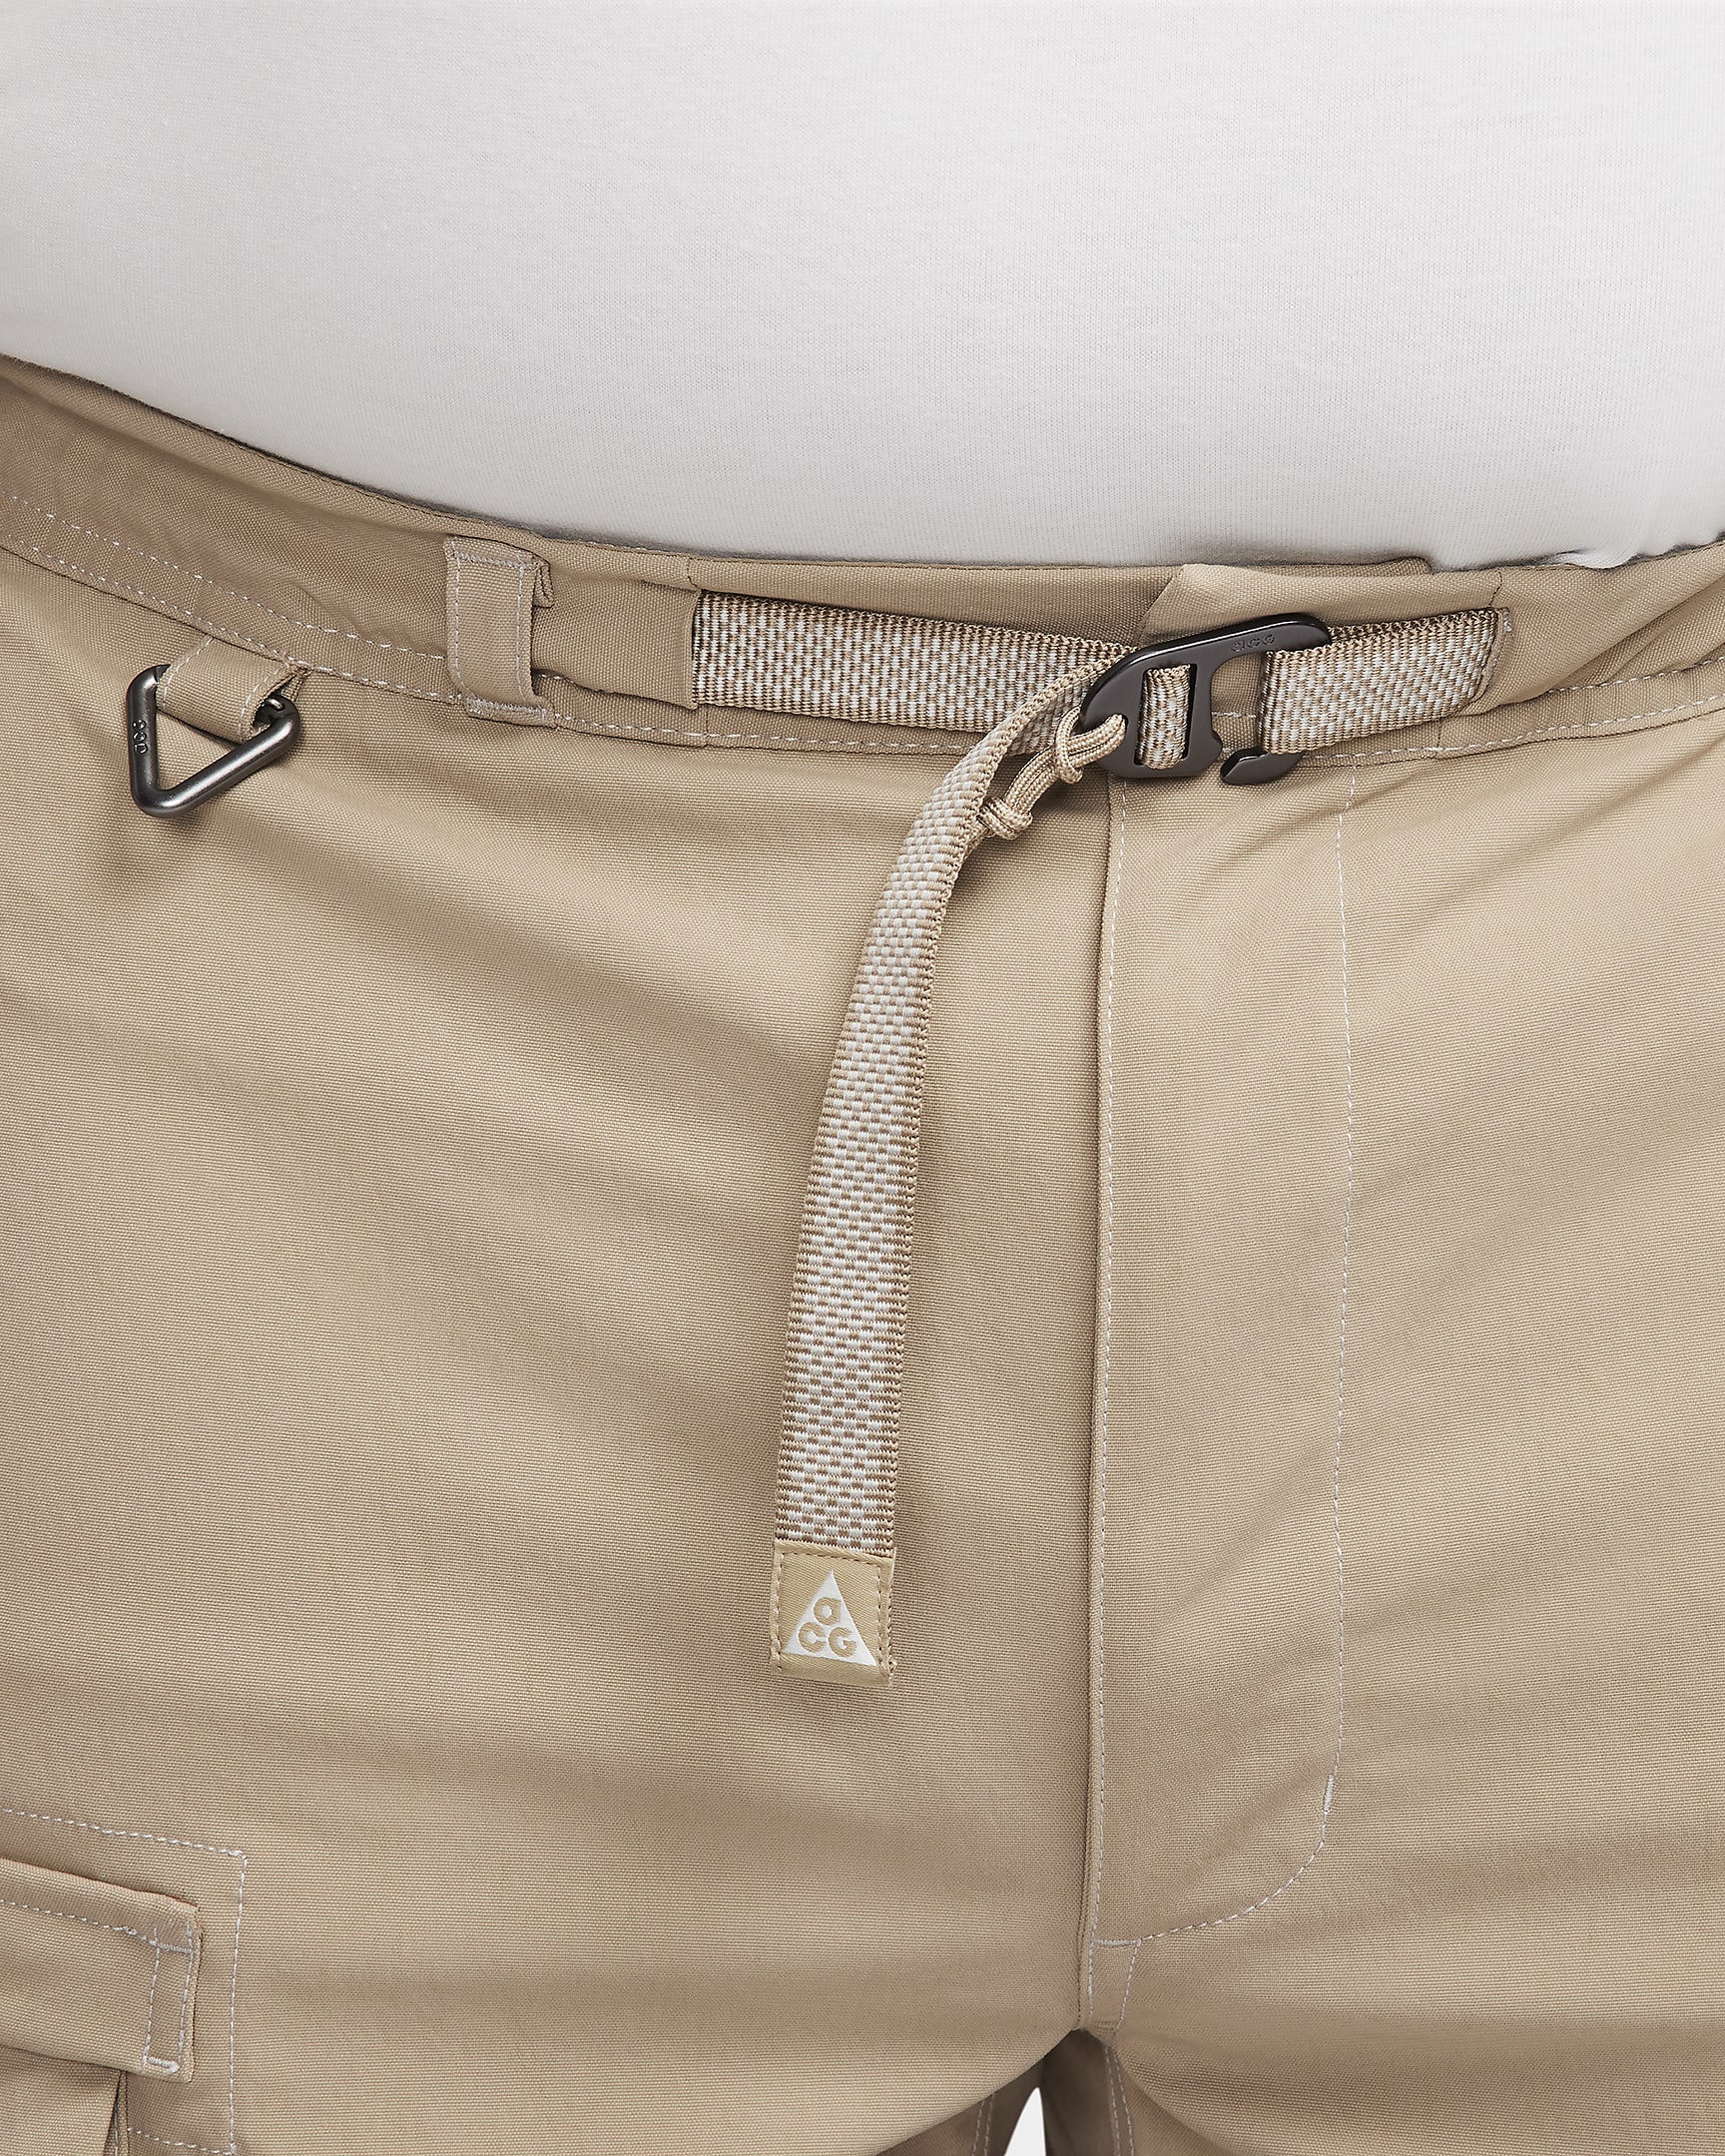 Nike ACG "Smith Summit" Men's Cargo Pants - Khaki/Light Iron Ore/Summit White